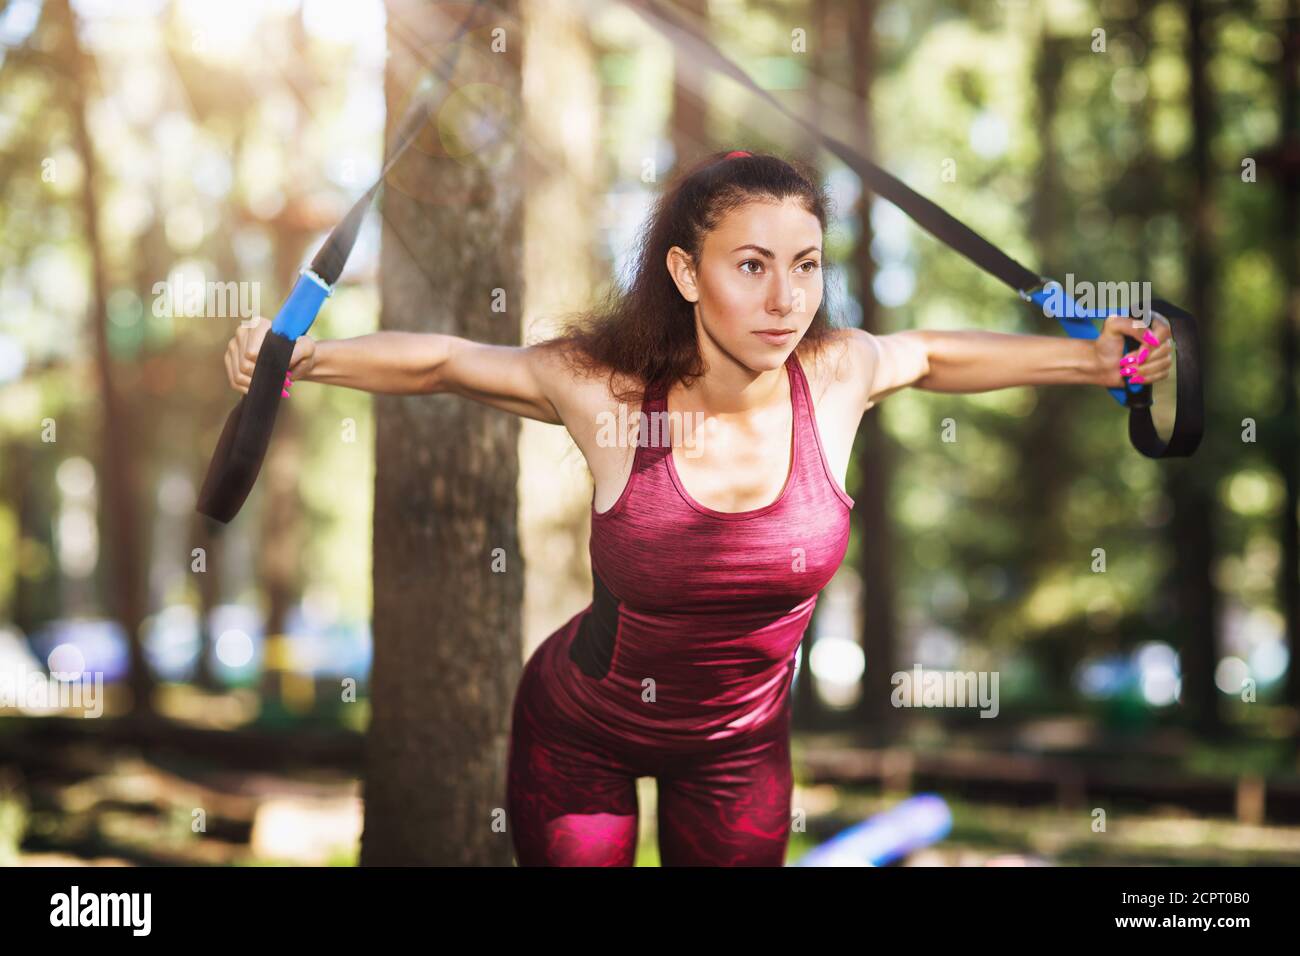 Junge Frau im Trainingsanzug macht Übungen im Park mit Fitness-Riemen an einem Baum befestigt. Der Athlet trainiert die Brustmuskeln Stockfoto